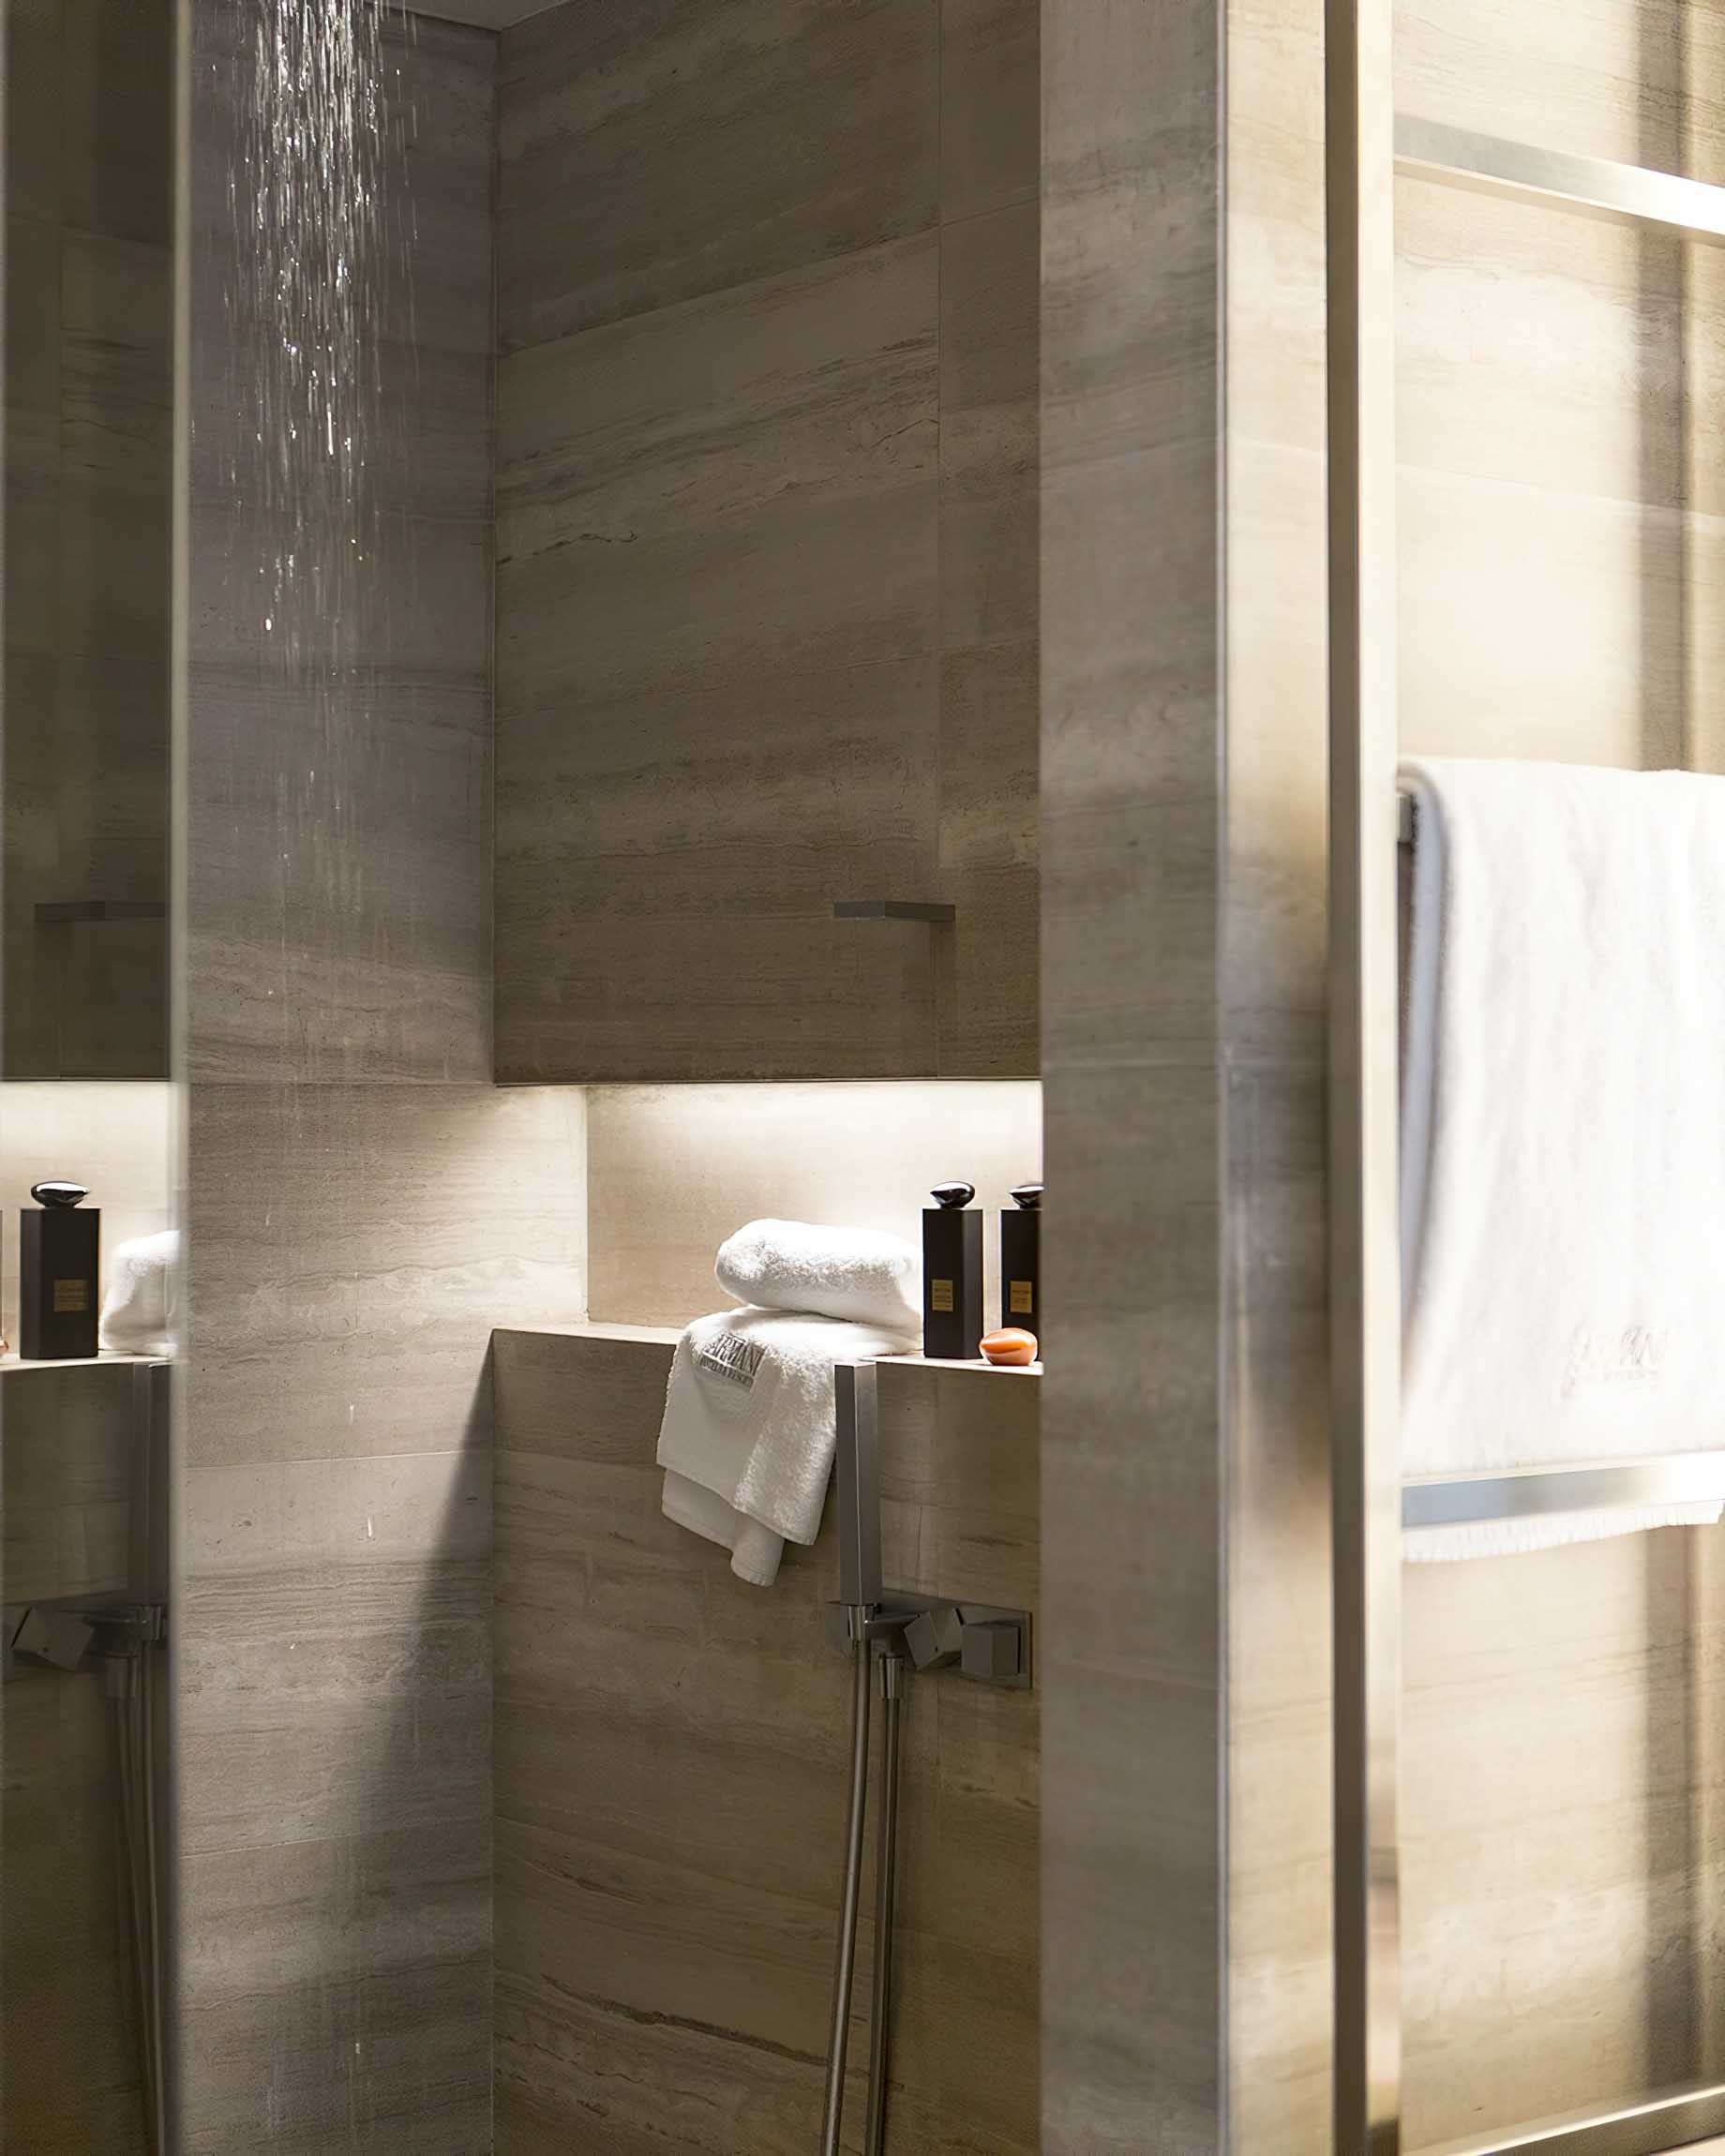 033 – Armani Hotel Milano – Milan, Italy – Armani Suite Bathroom Shower